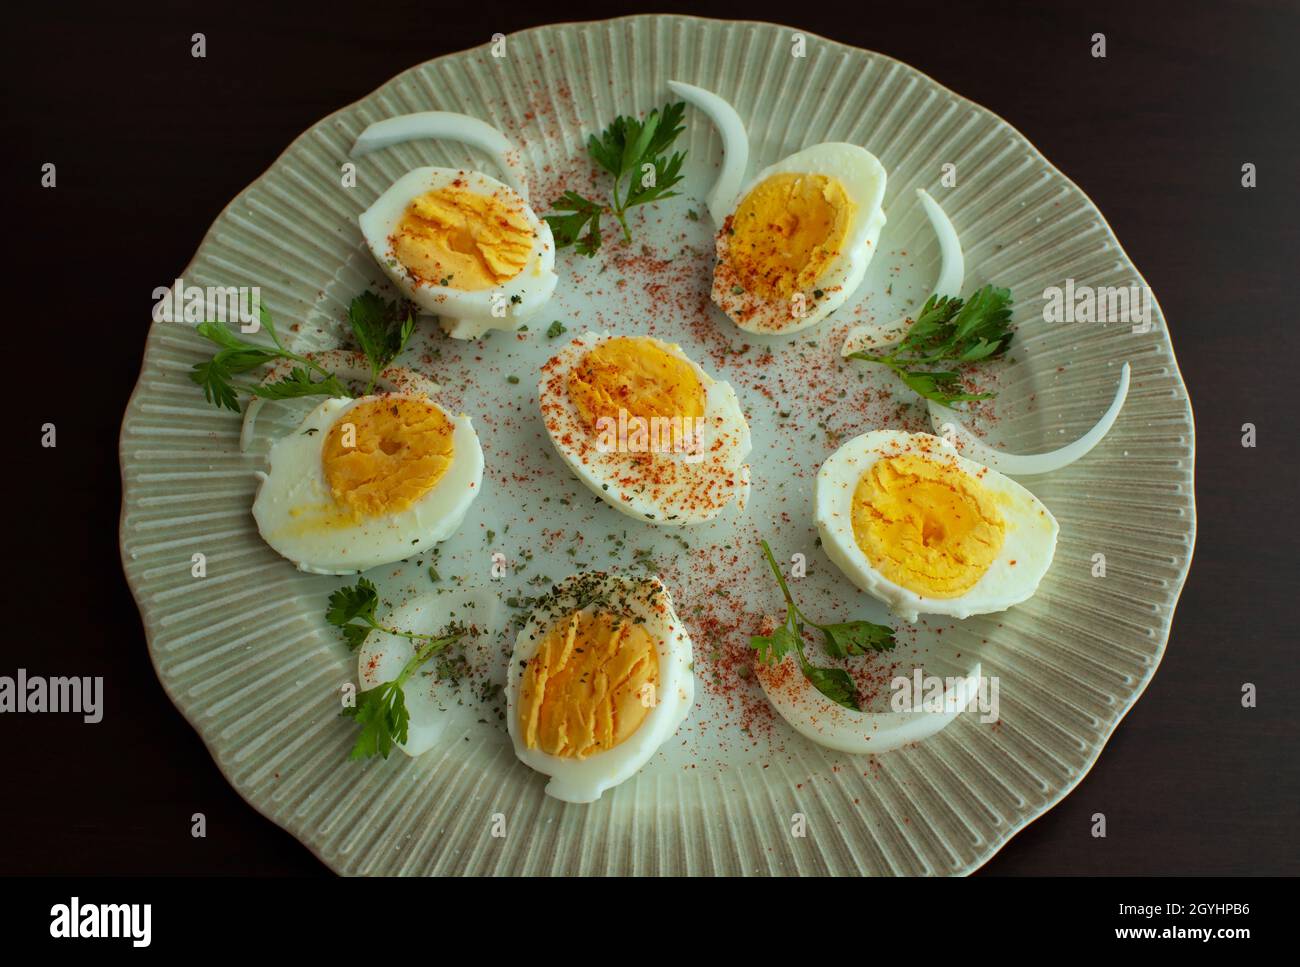 Huevo cocido en un plato decorado con hojas de perejil, cebollas y especias. Foto de stock